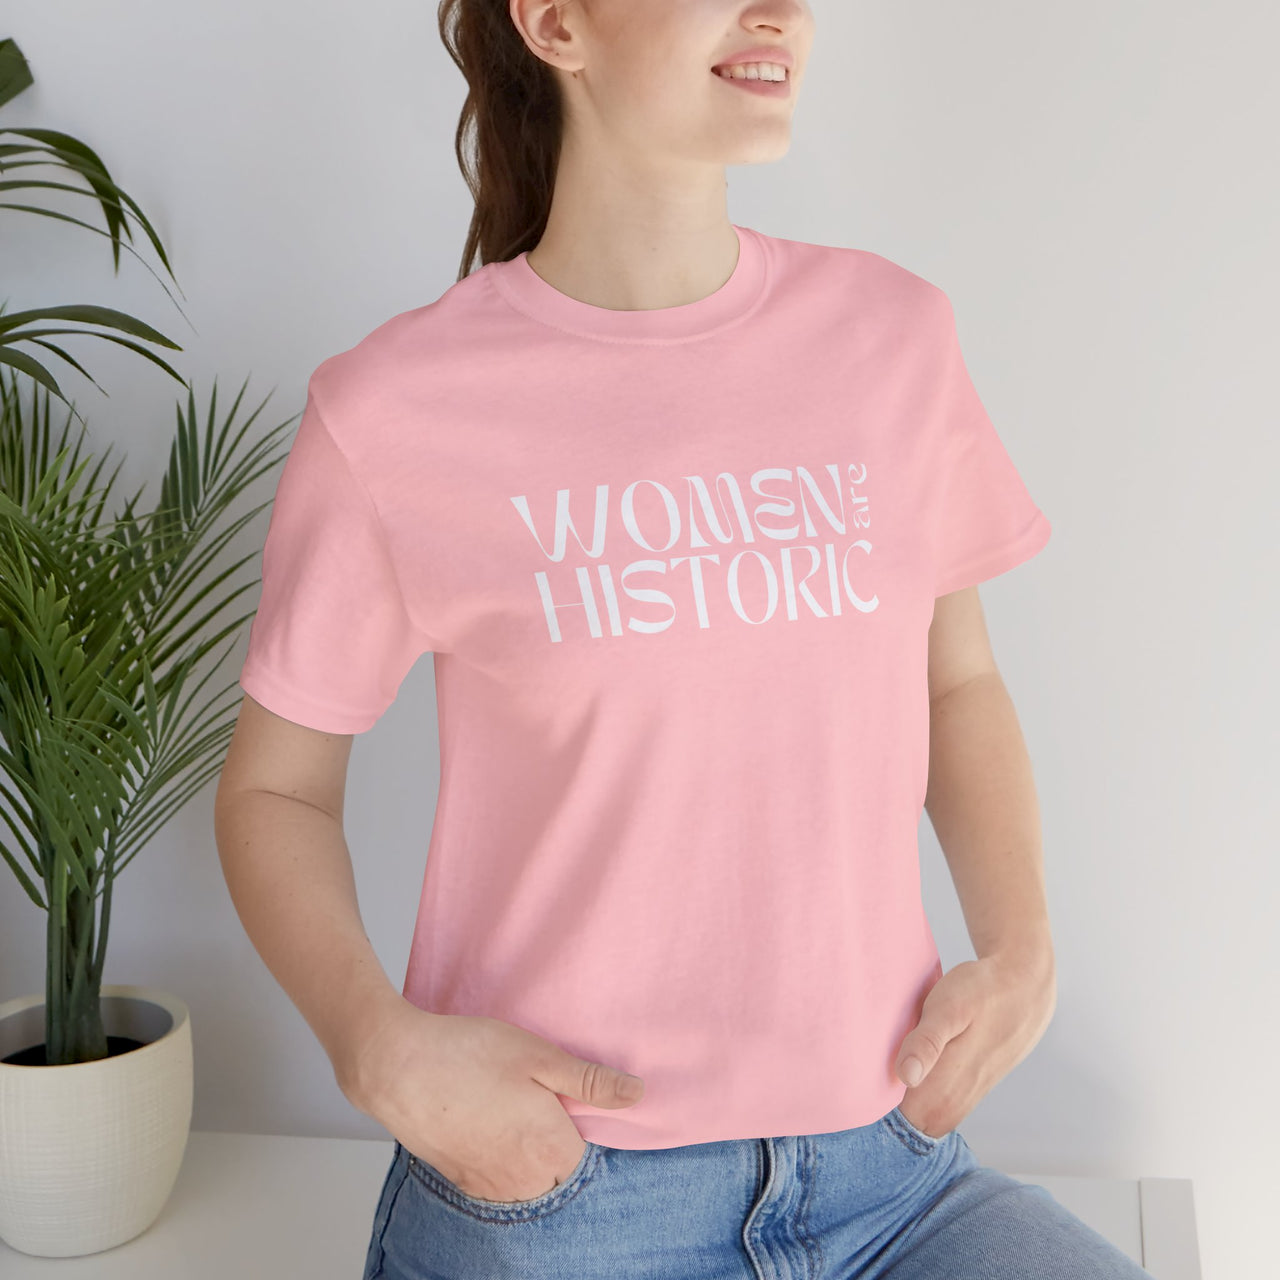 Women Are Historic Tee